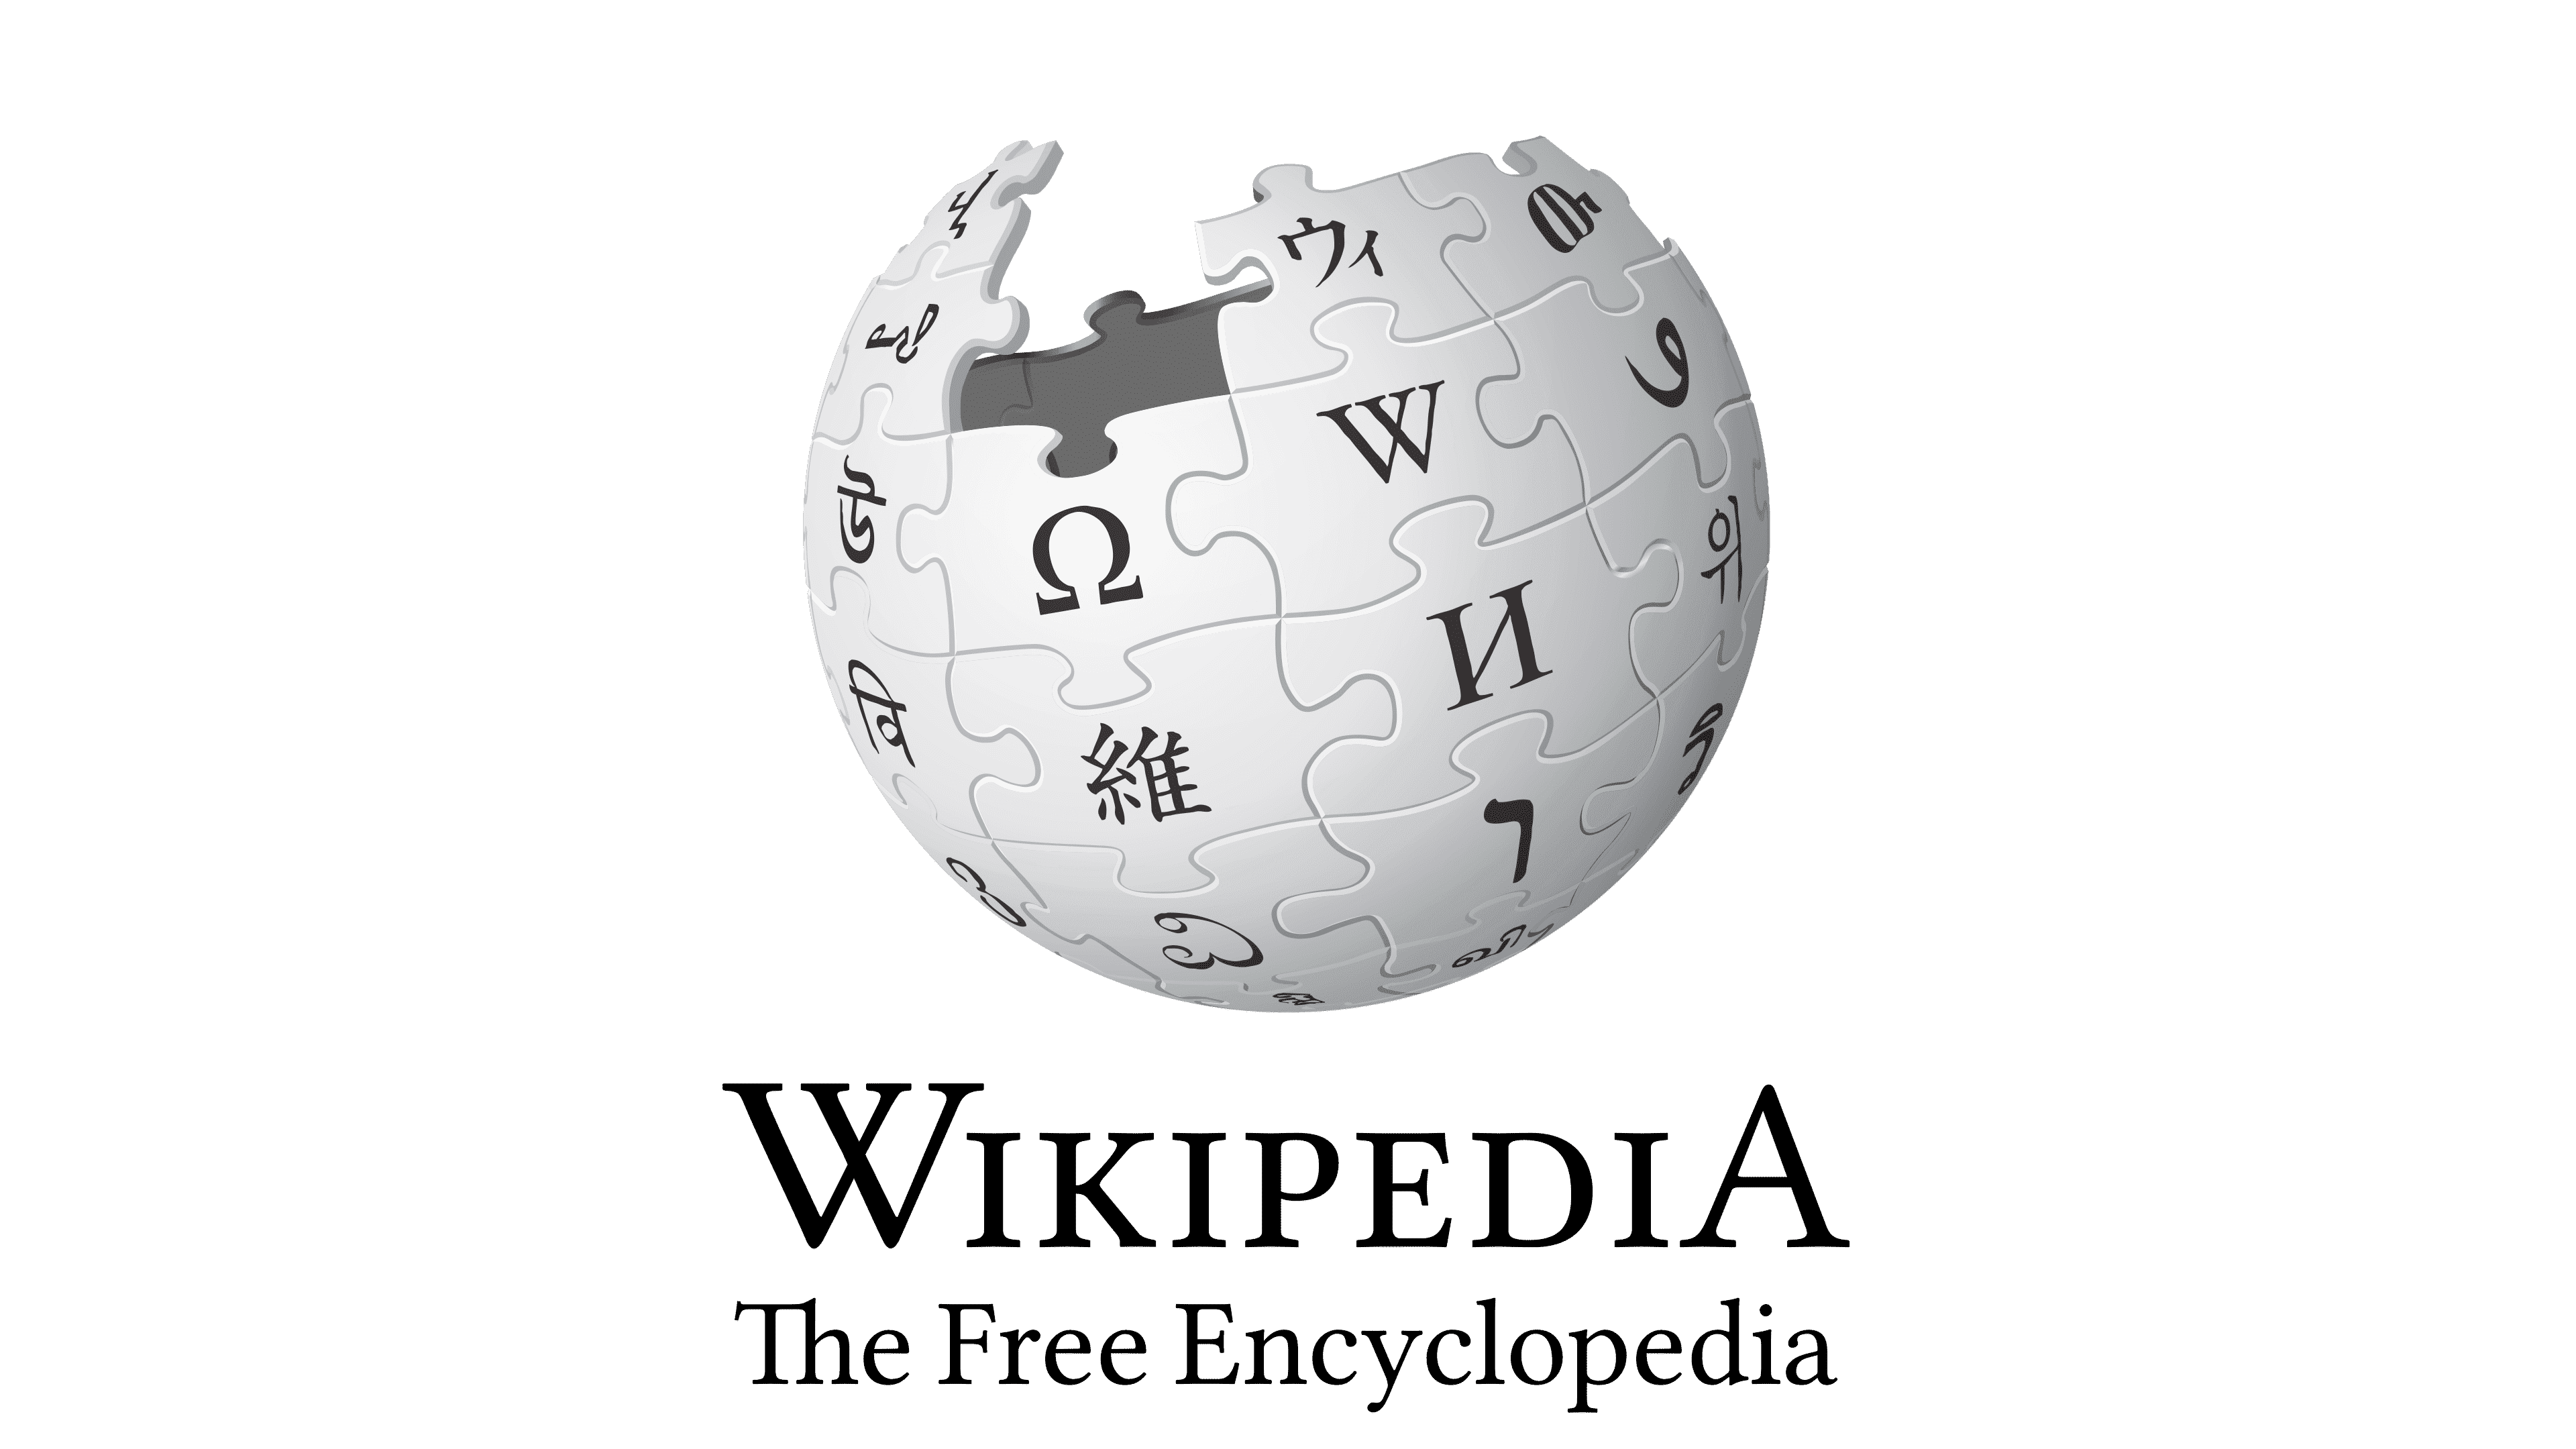 Circle - Wikipedia